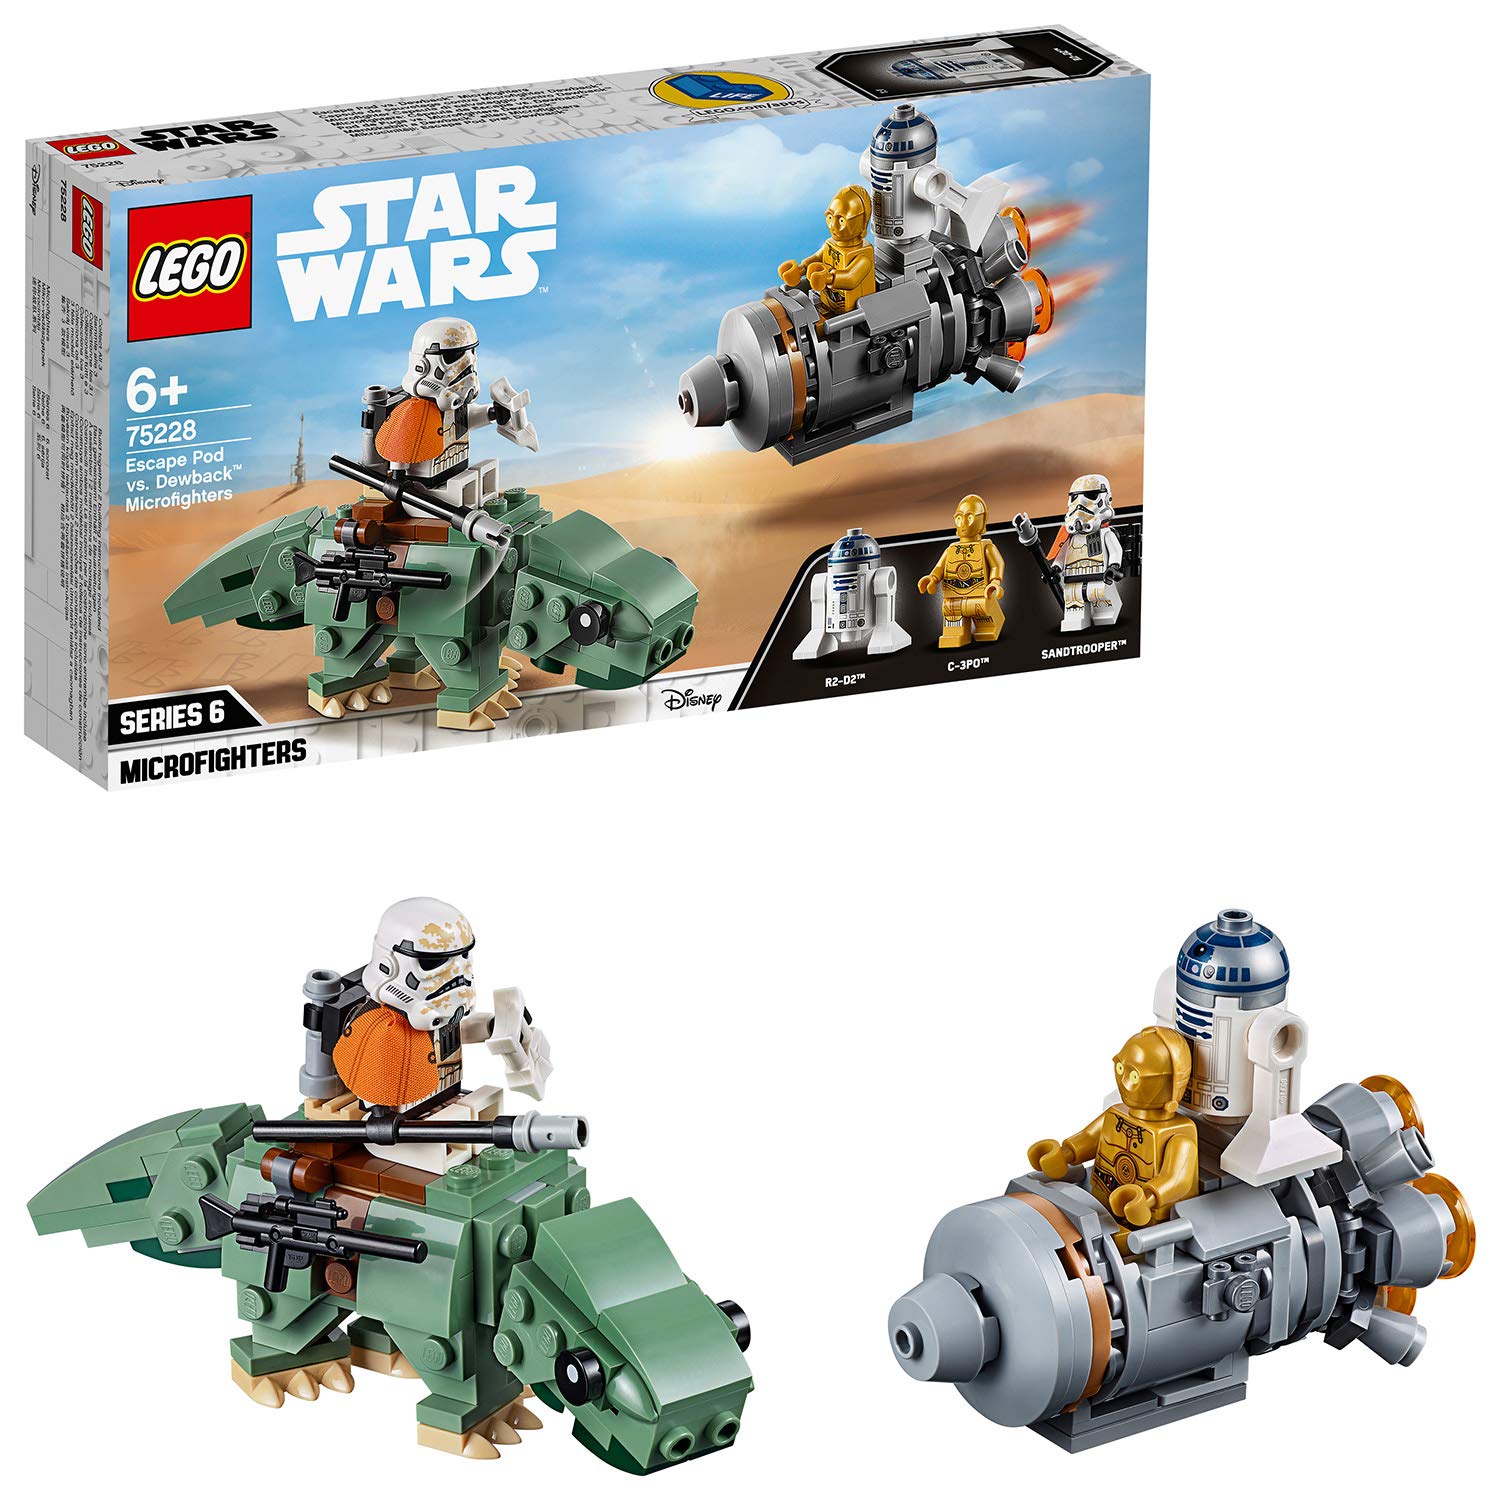 Lego Star Wars 75228 Escape Pod Vs. Dewback Microfighters